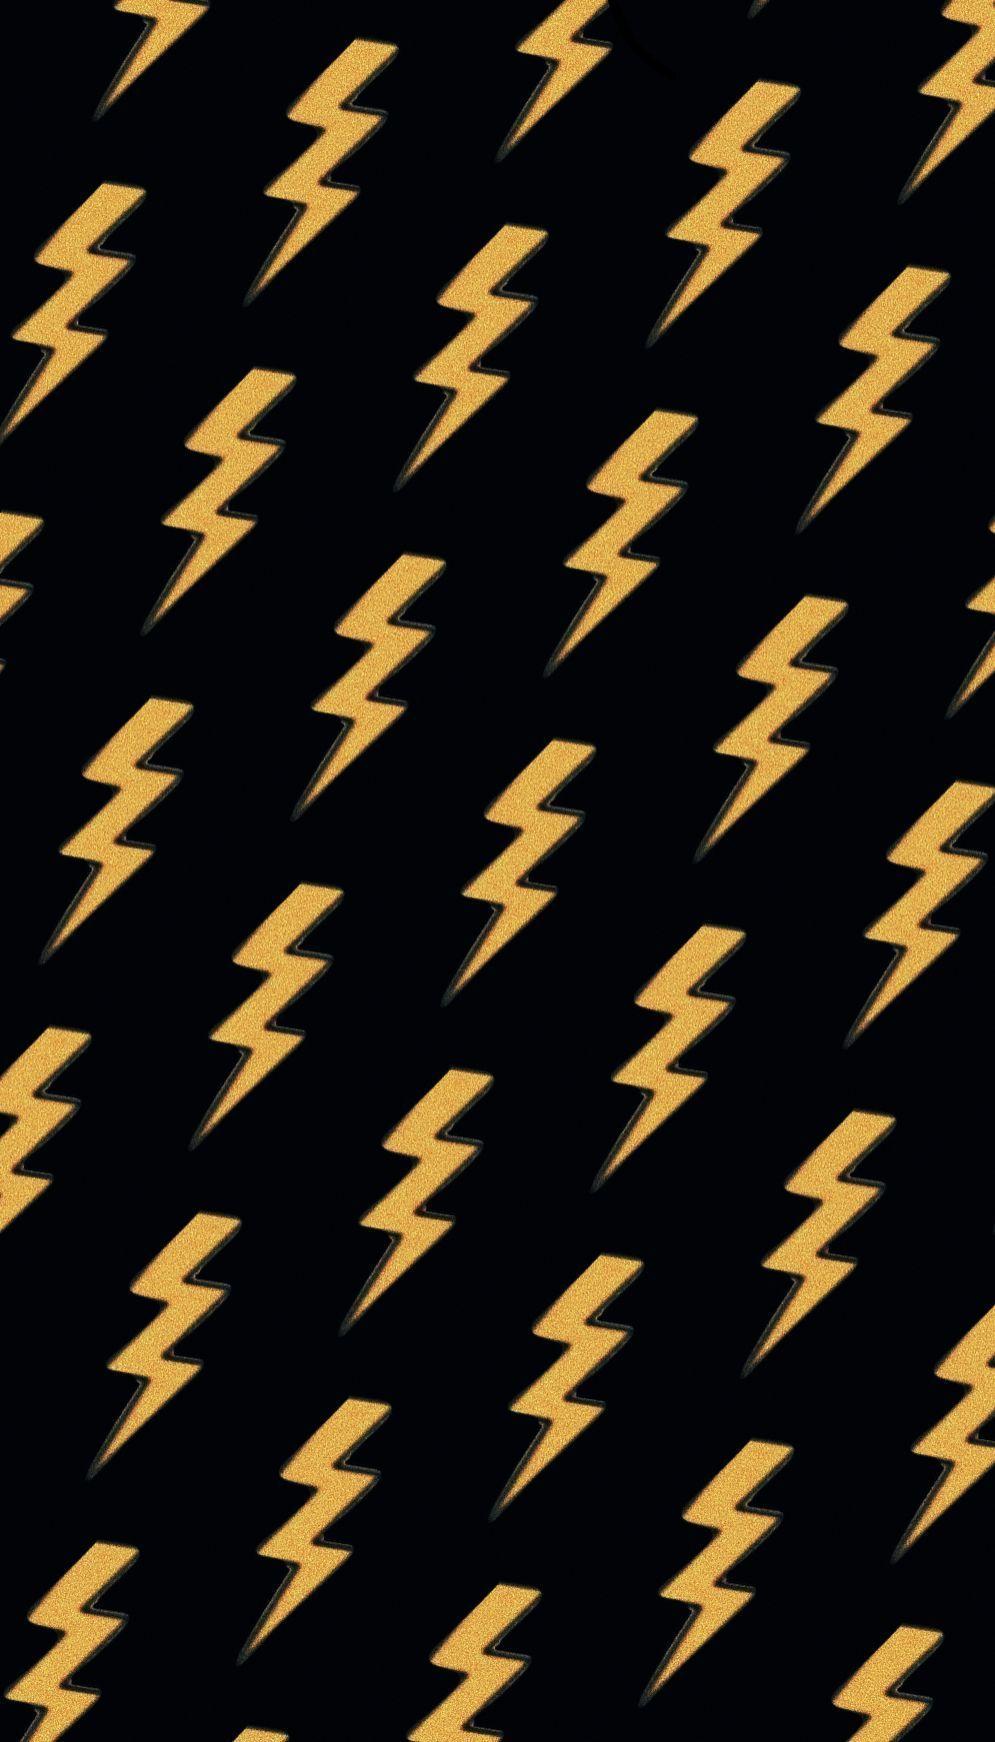 Lightning bolt iphone HD wallpapers  Pxfuel